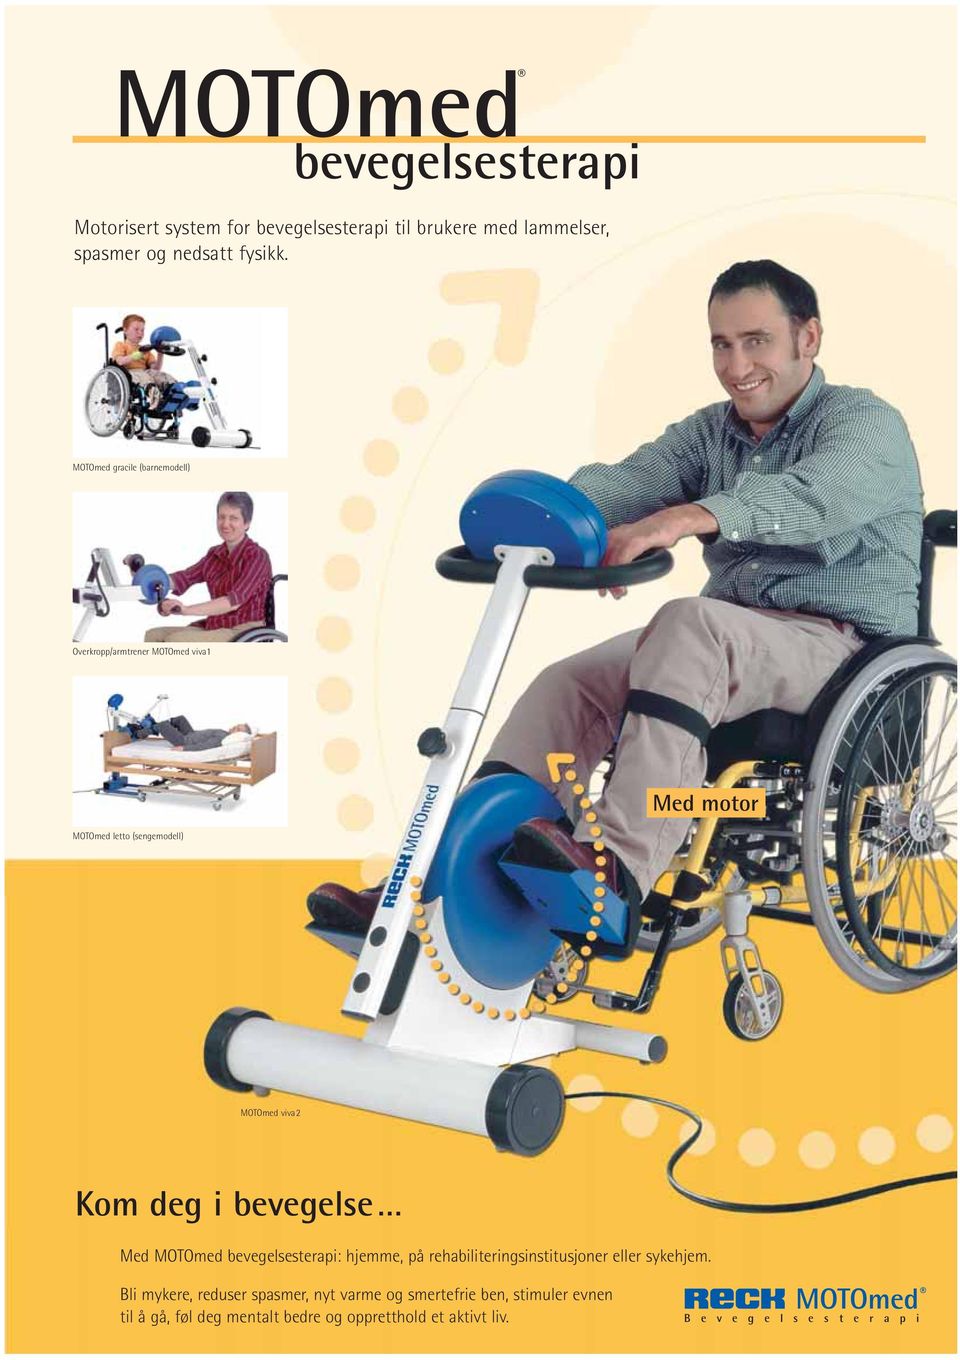 bevegelse Med MOTOmed bevegelsesterapi: hjemme, på rehabiliteringsinstitusjoner eller sykehjem.